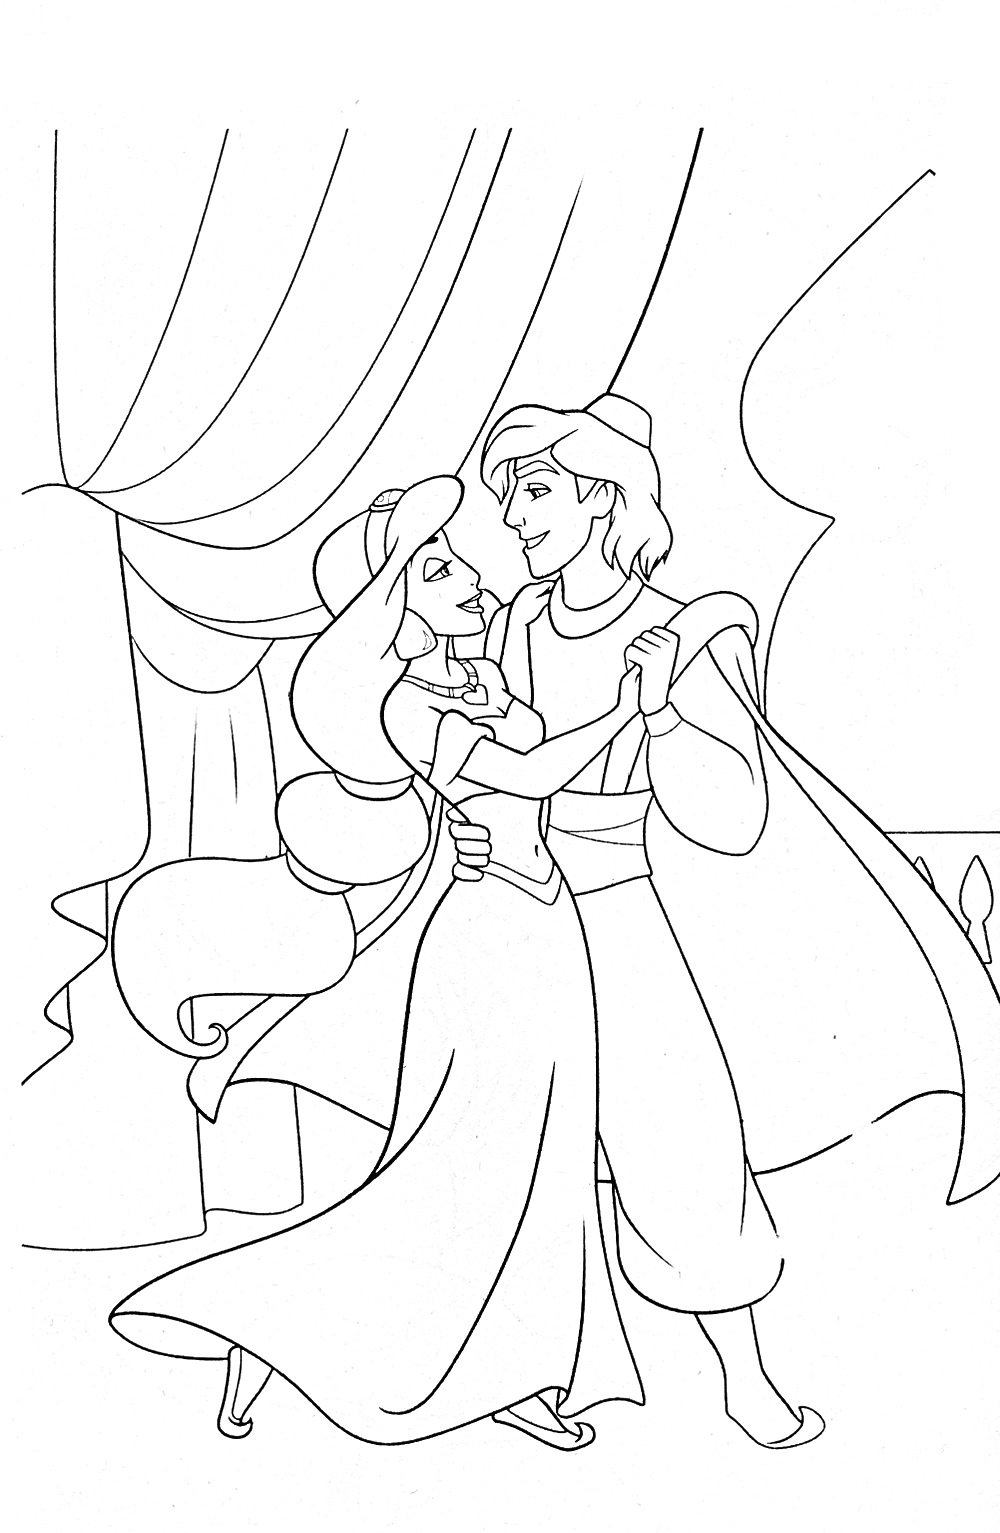 Аладдин и Жасмин танцуют во дворце перед занавесом